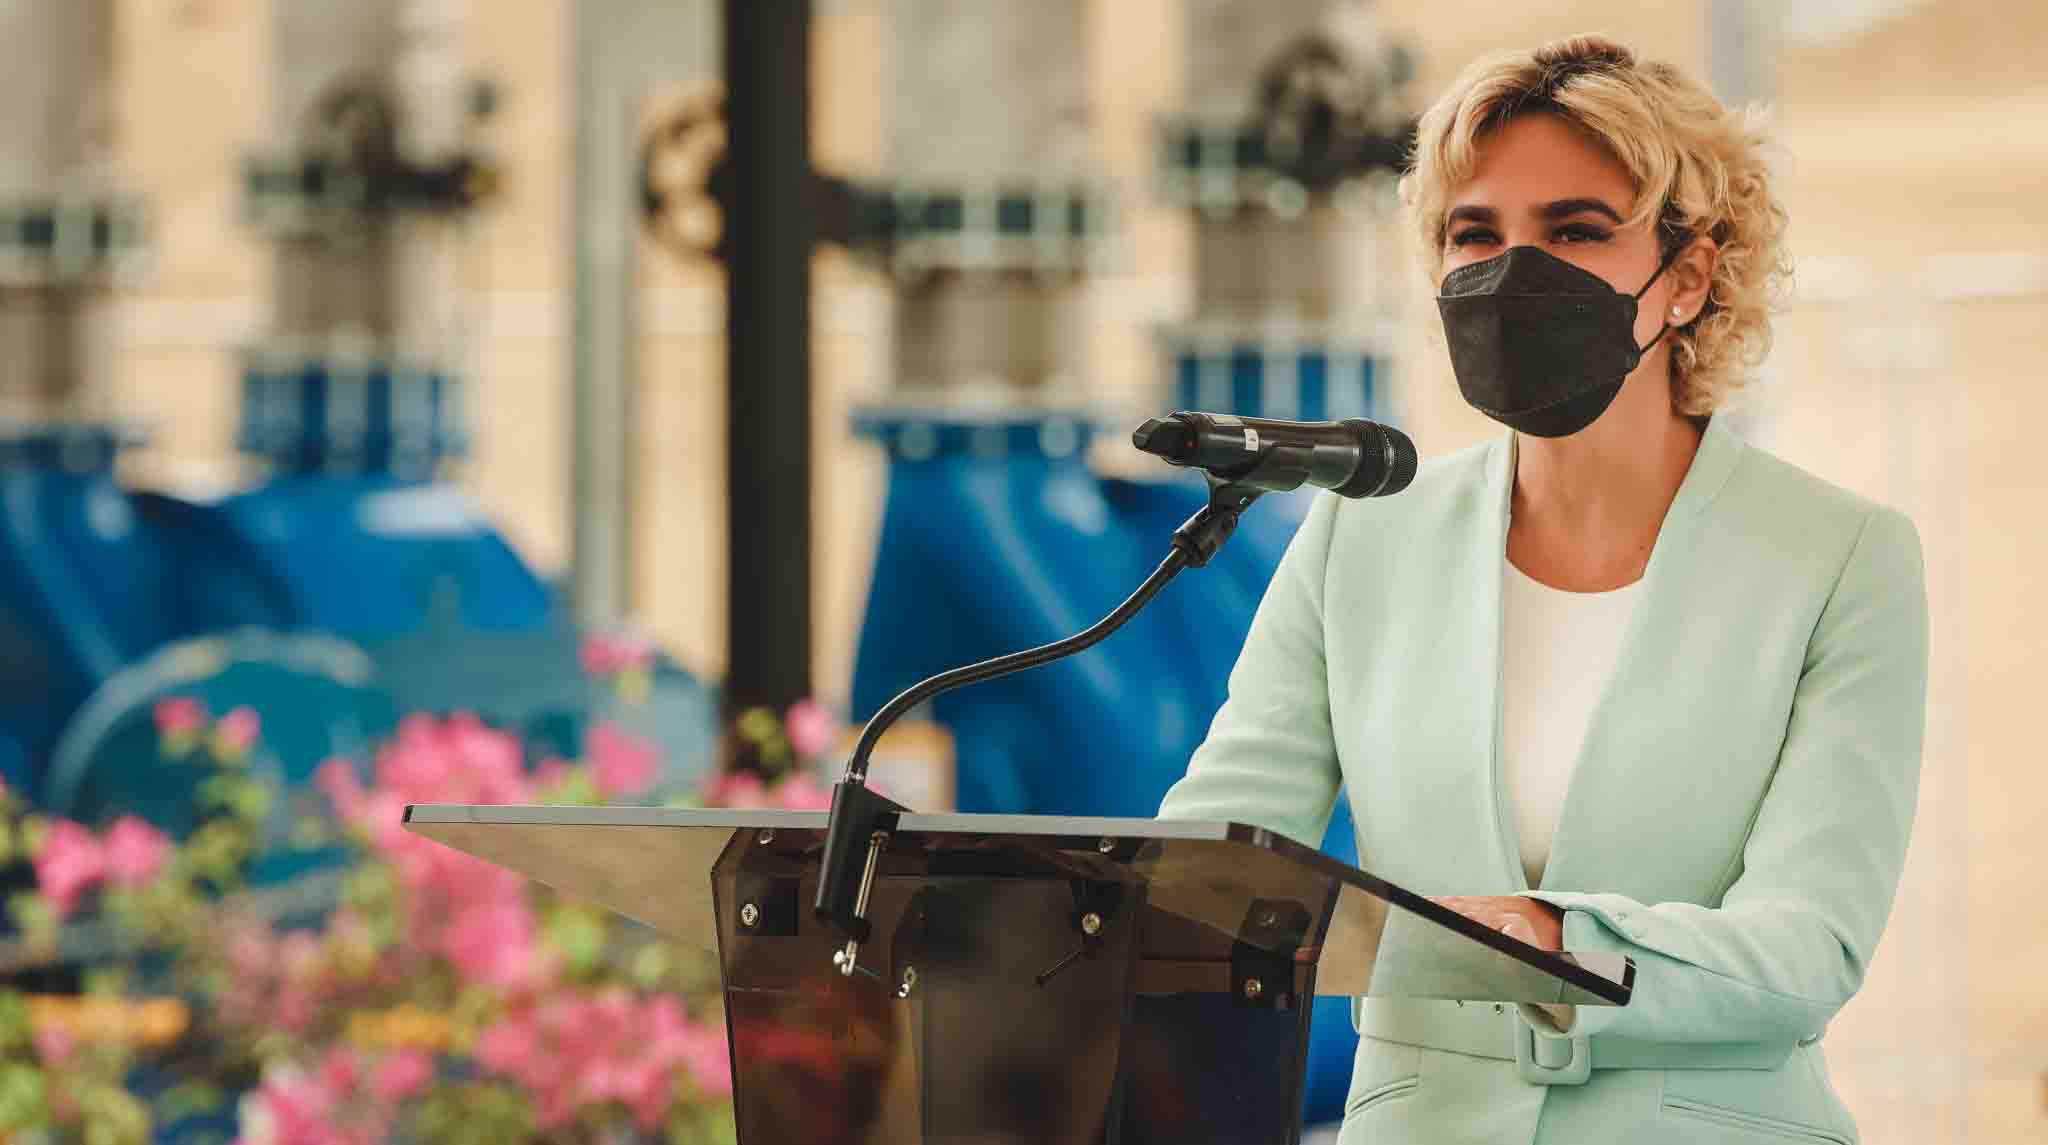 Imagen referencial. La alcaldesa de Guayaquil, Cynthia Viteri durante un discurso ofrecido. Foto: Twitter Cynthia Viteri